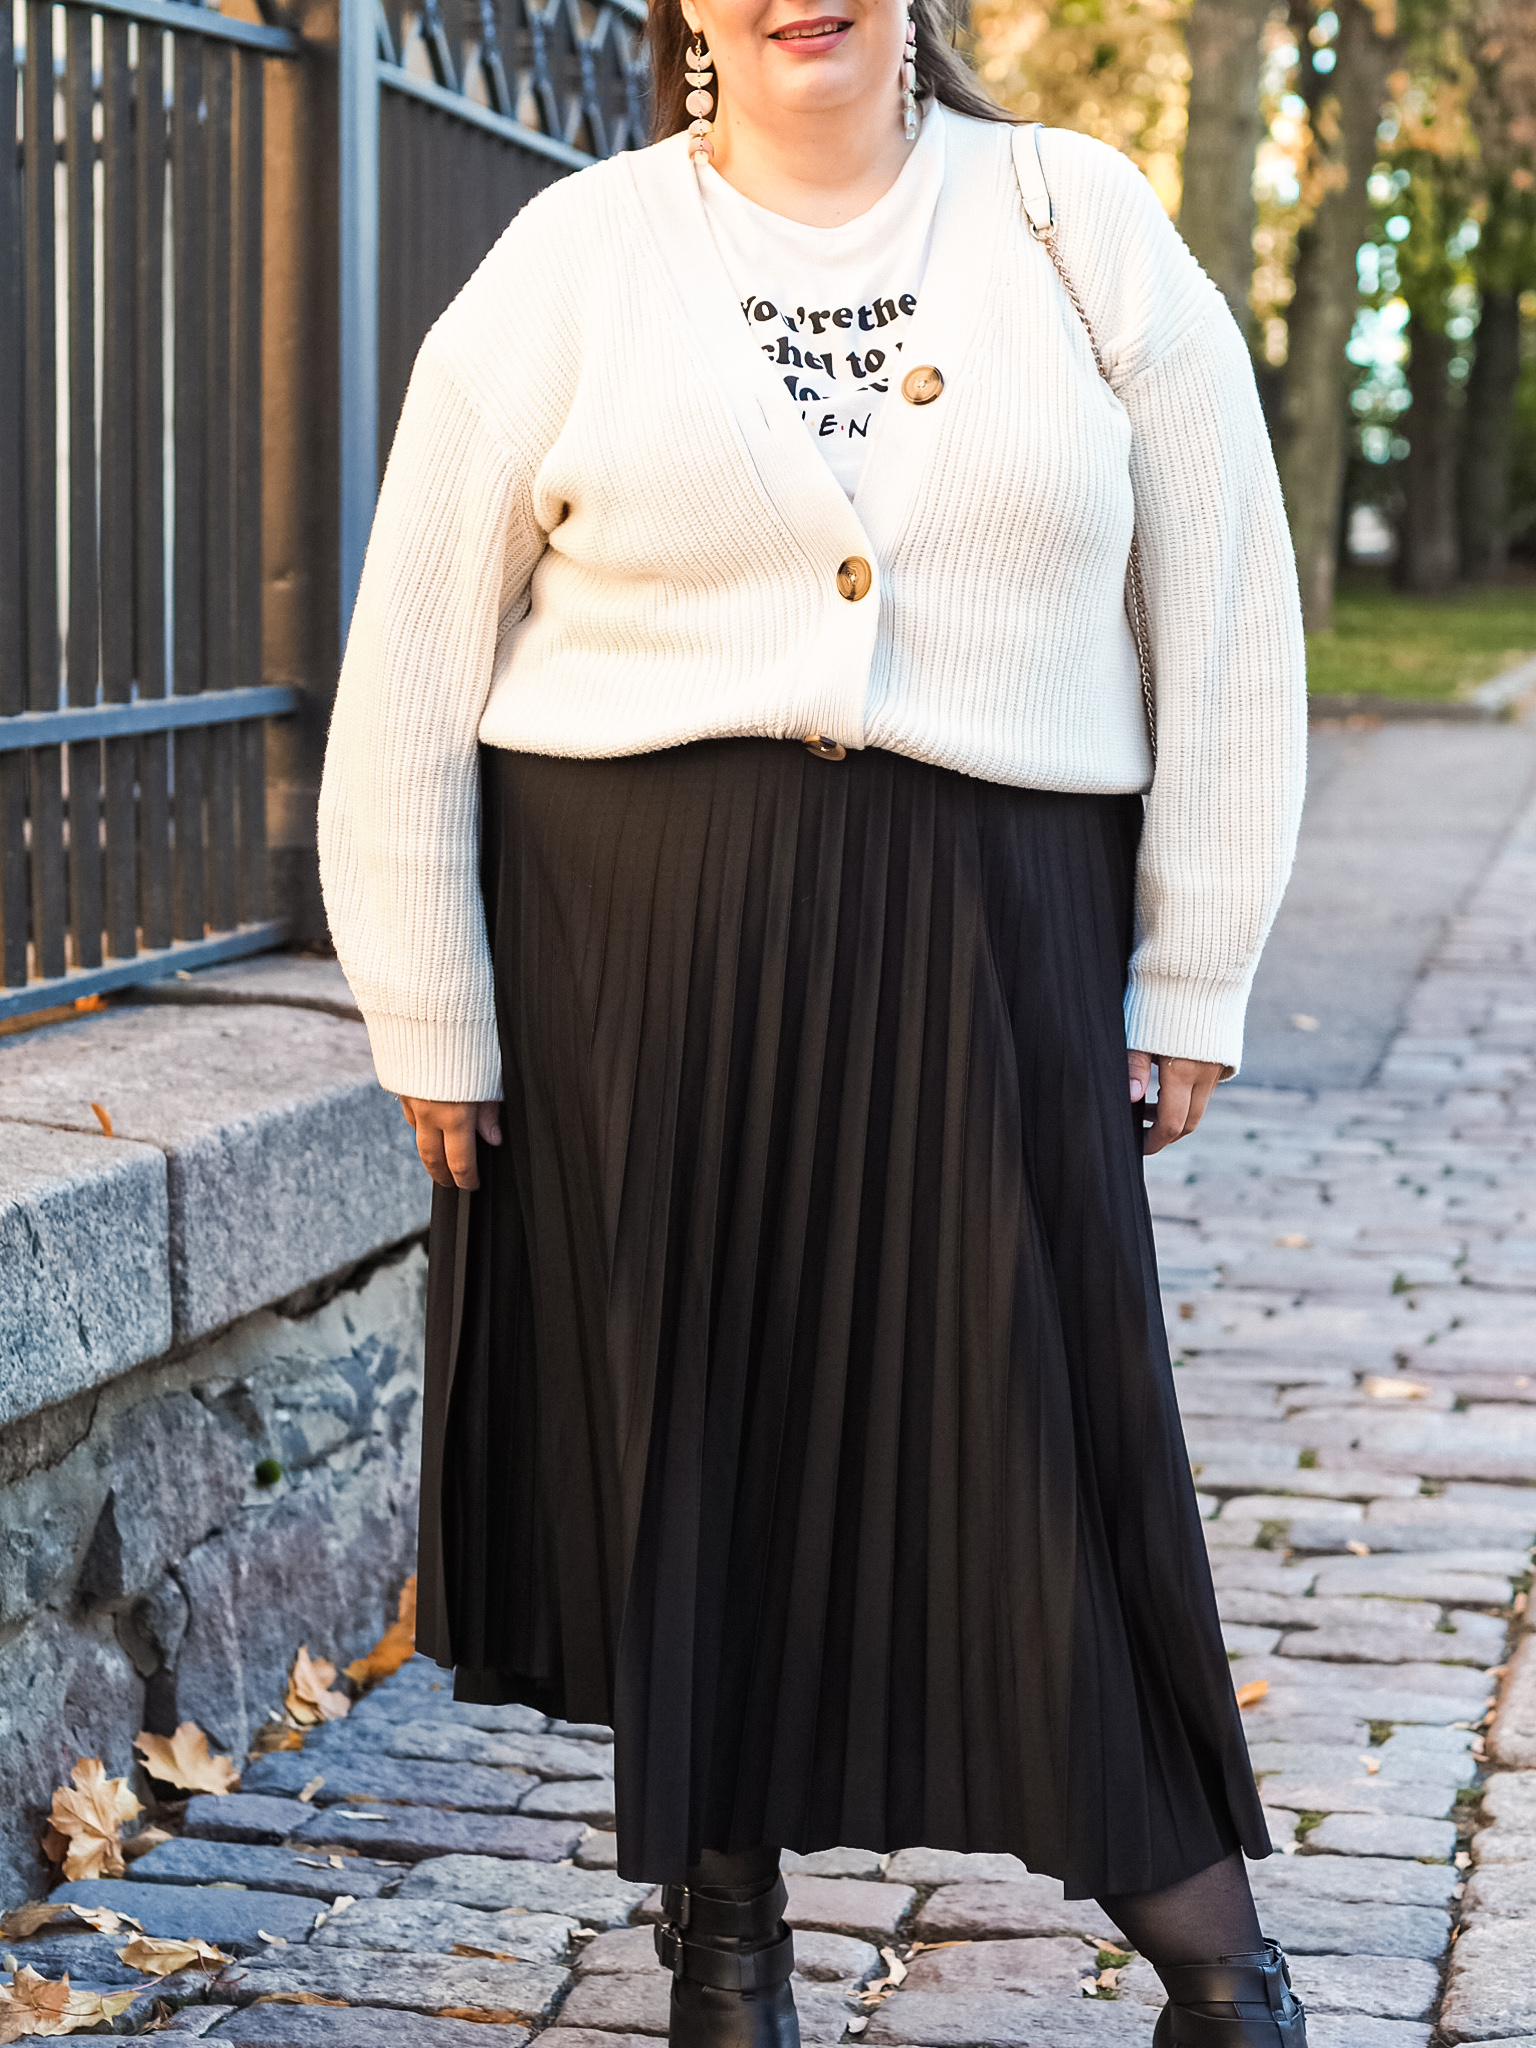 Naisella yllään neuletakki, sen alla valkoinen, tekstisomisteinen paita, sekä musta midimittainen vekkihame.